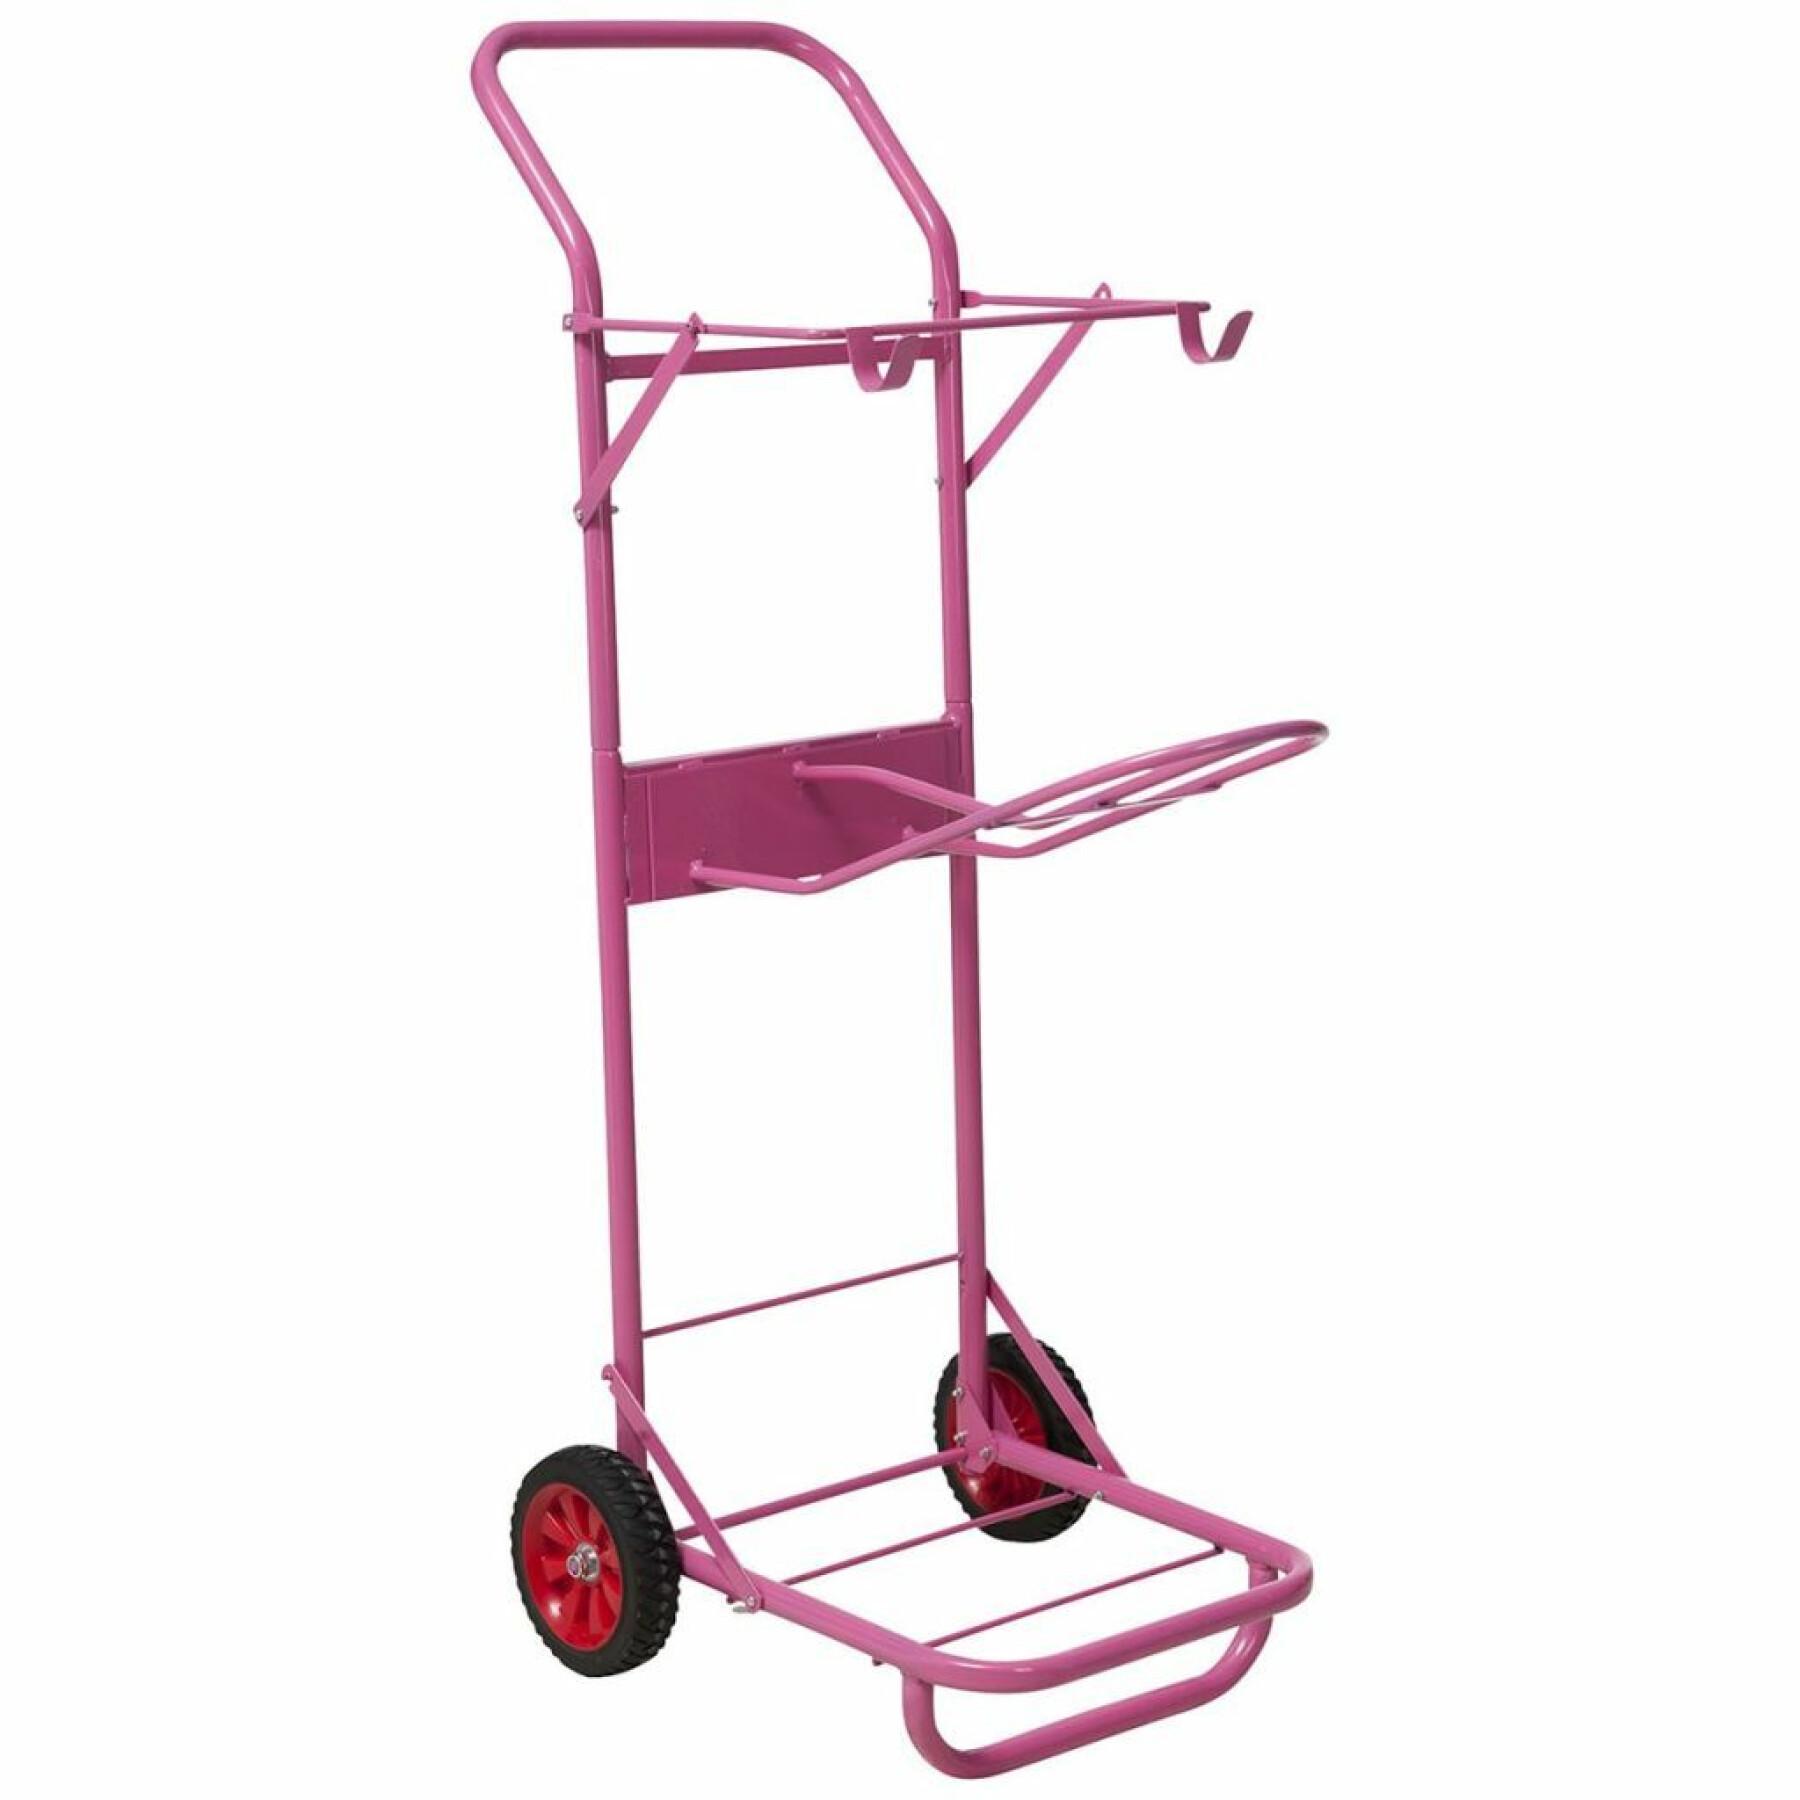 Hippotonic saddle cart